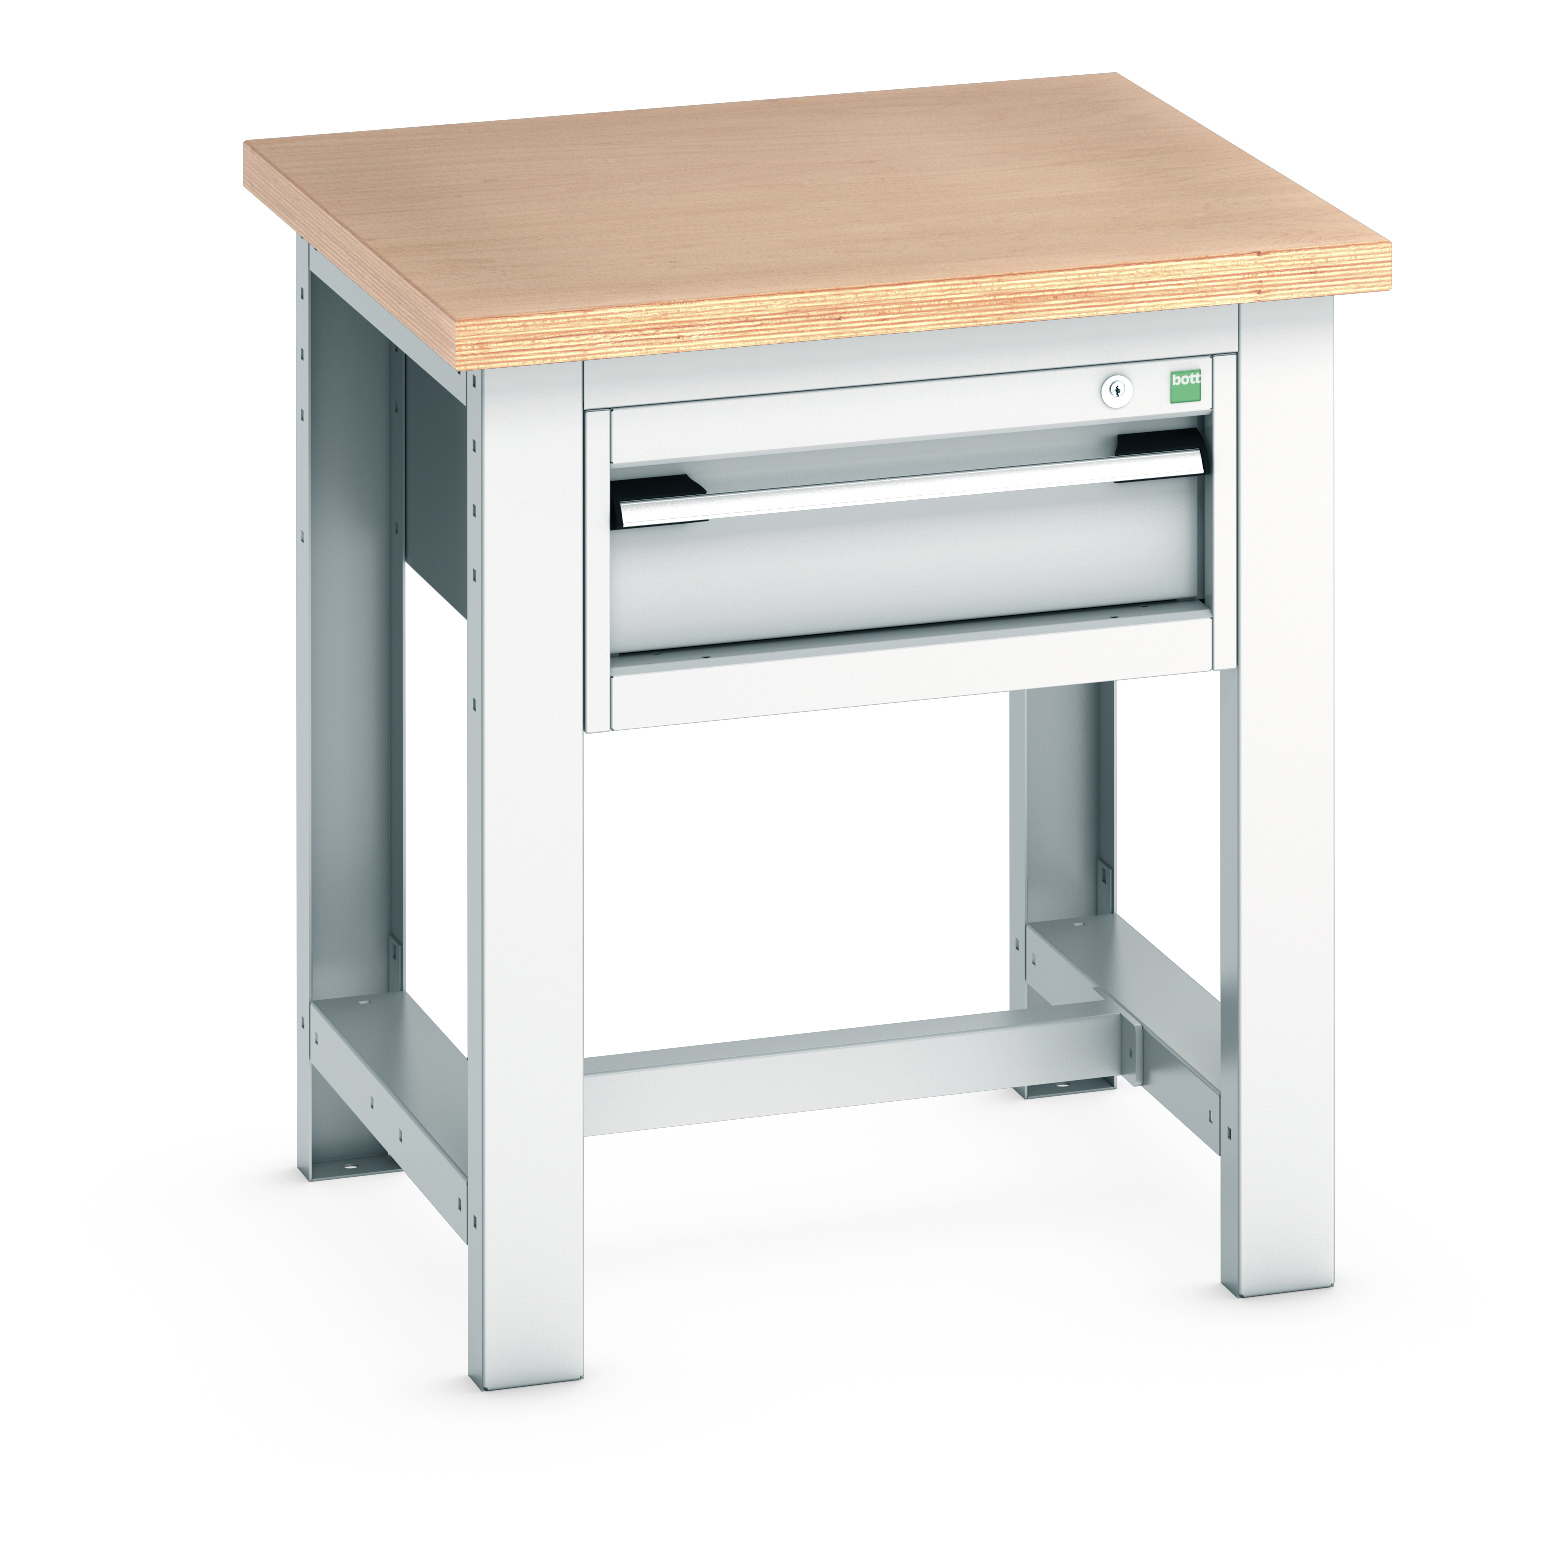 Bott Cubio Framework Workstand With 1 Drawer Cabinet - 41003521.16V